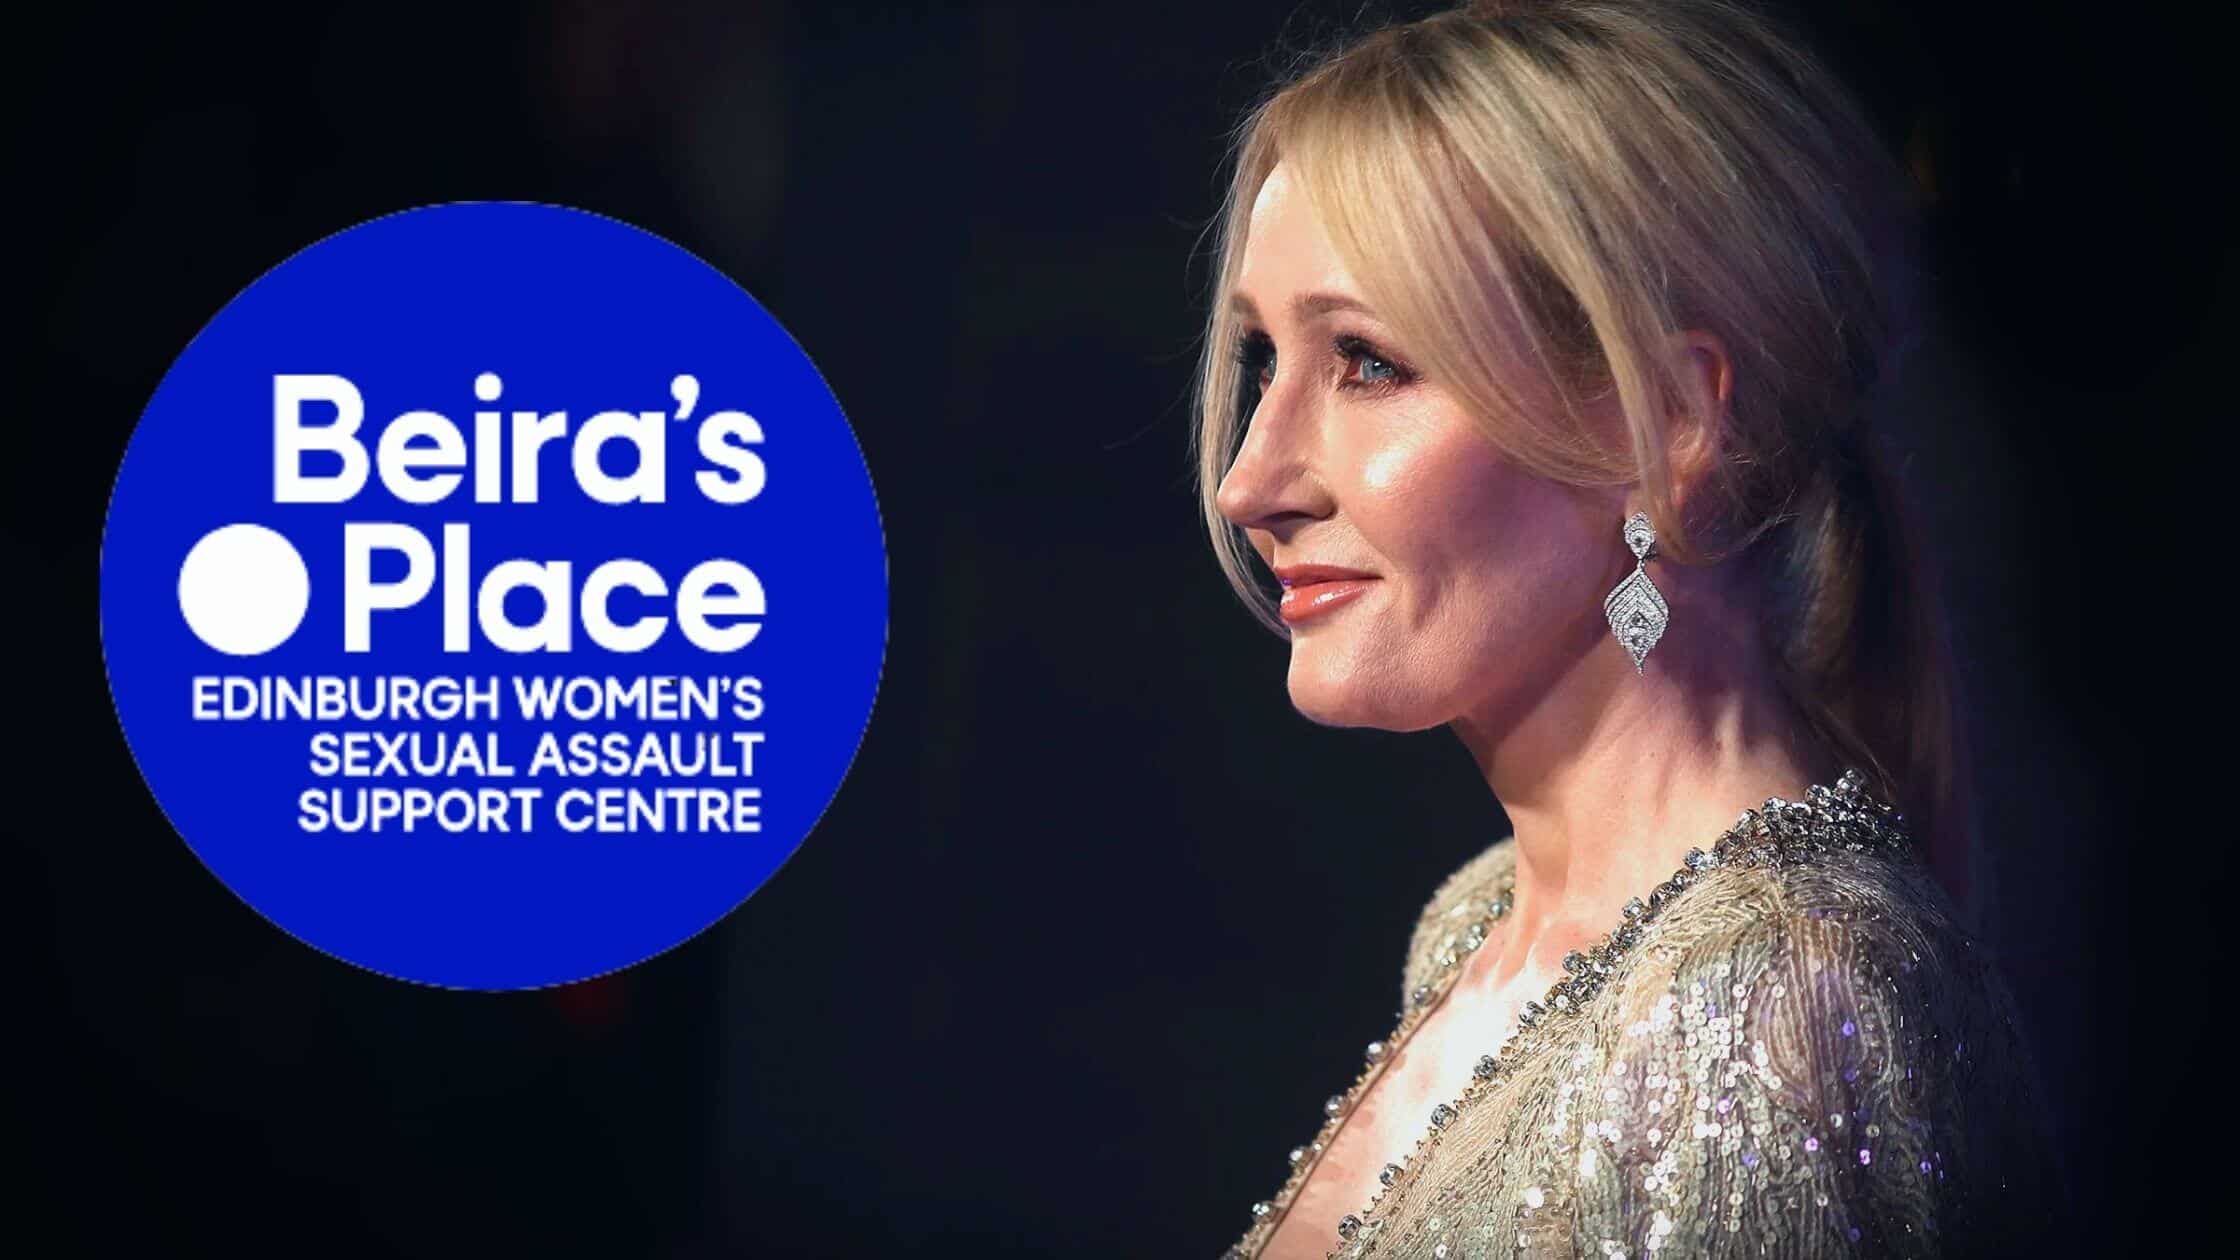 Jk Rowling Established A Rape Crisis Center That Does Not Accept Trans Women